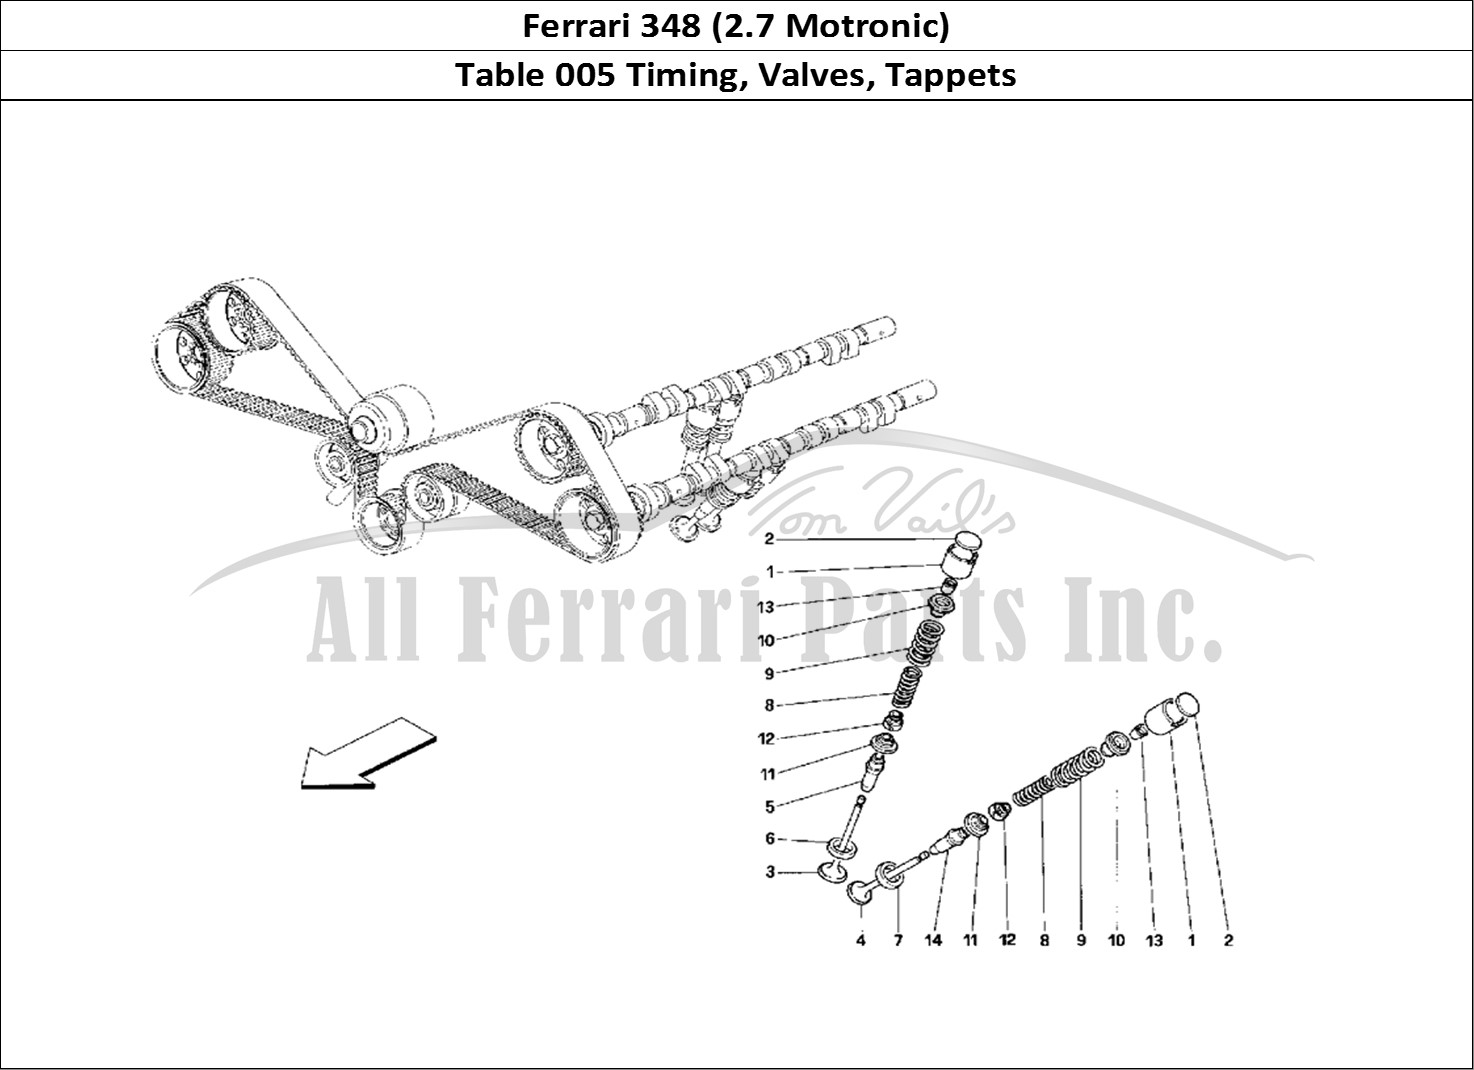 Ferrari Parts Ferrari 348 (2.7 Motronic) Page 005 Timing - Tappets